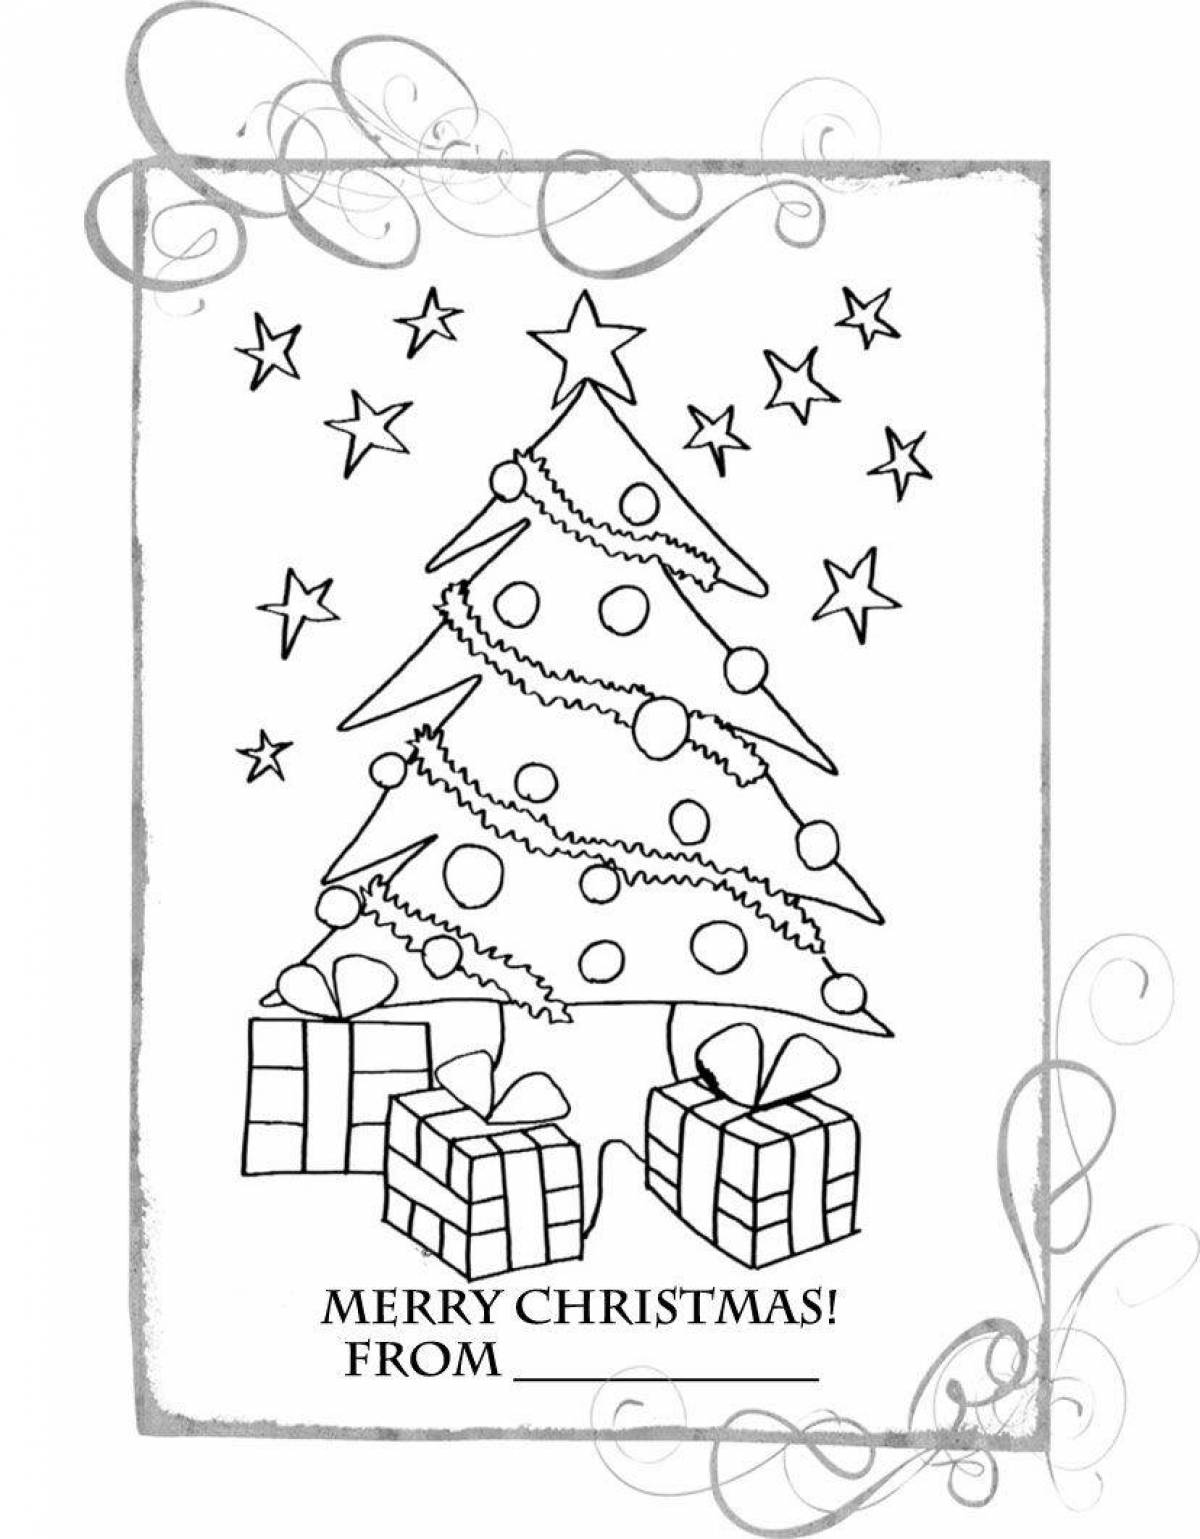 Whimsical Christmas card